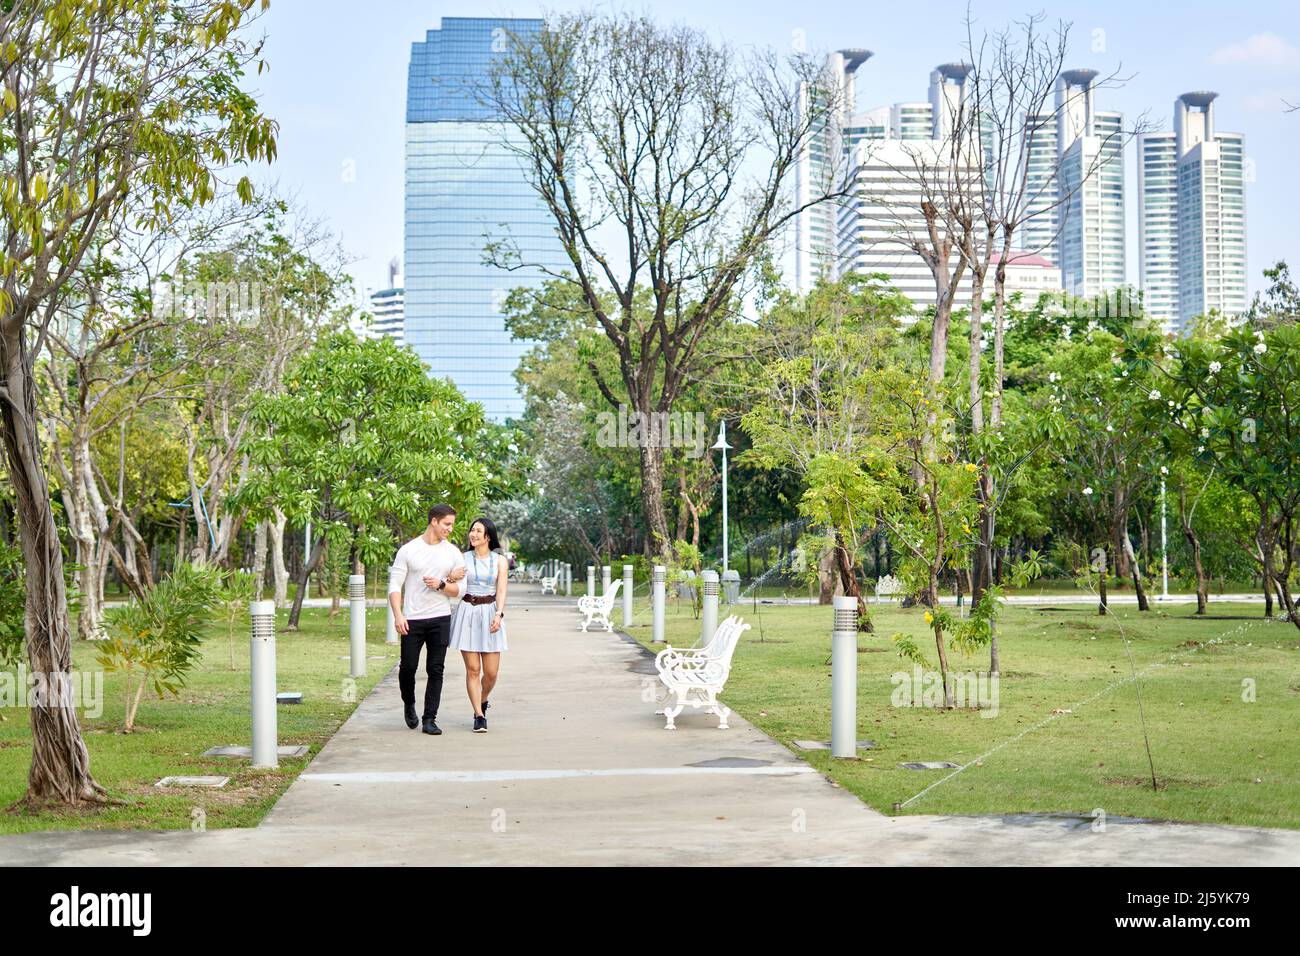 Coppia camminando attraverso un parco urbano con grattacieli sullo sfondo Foto Stock